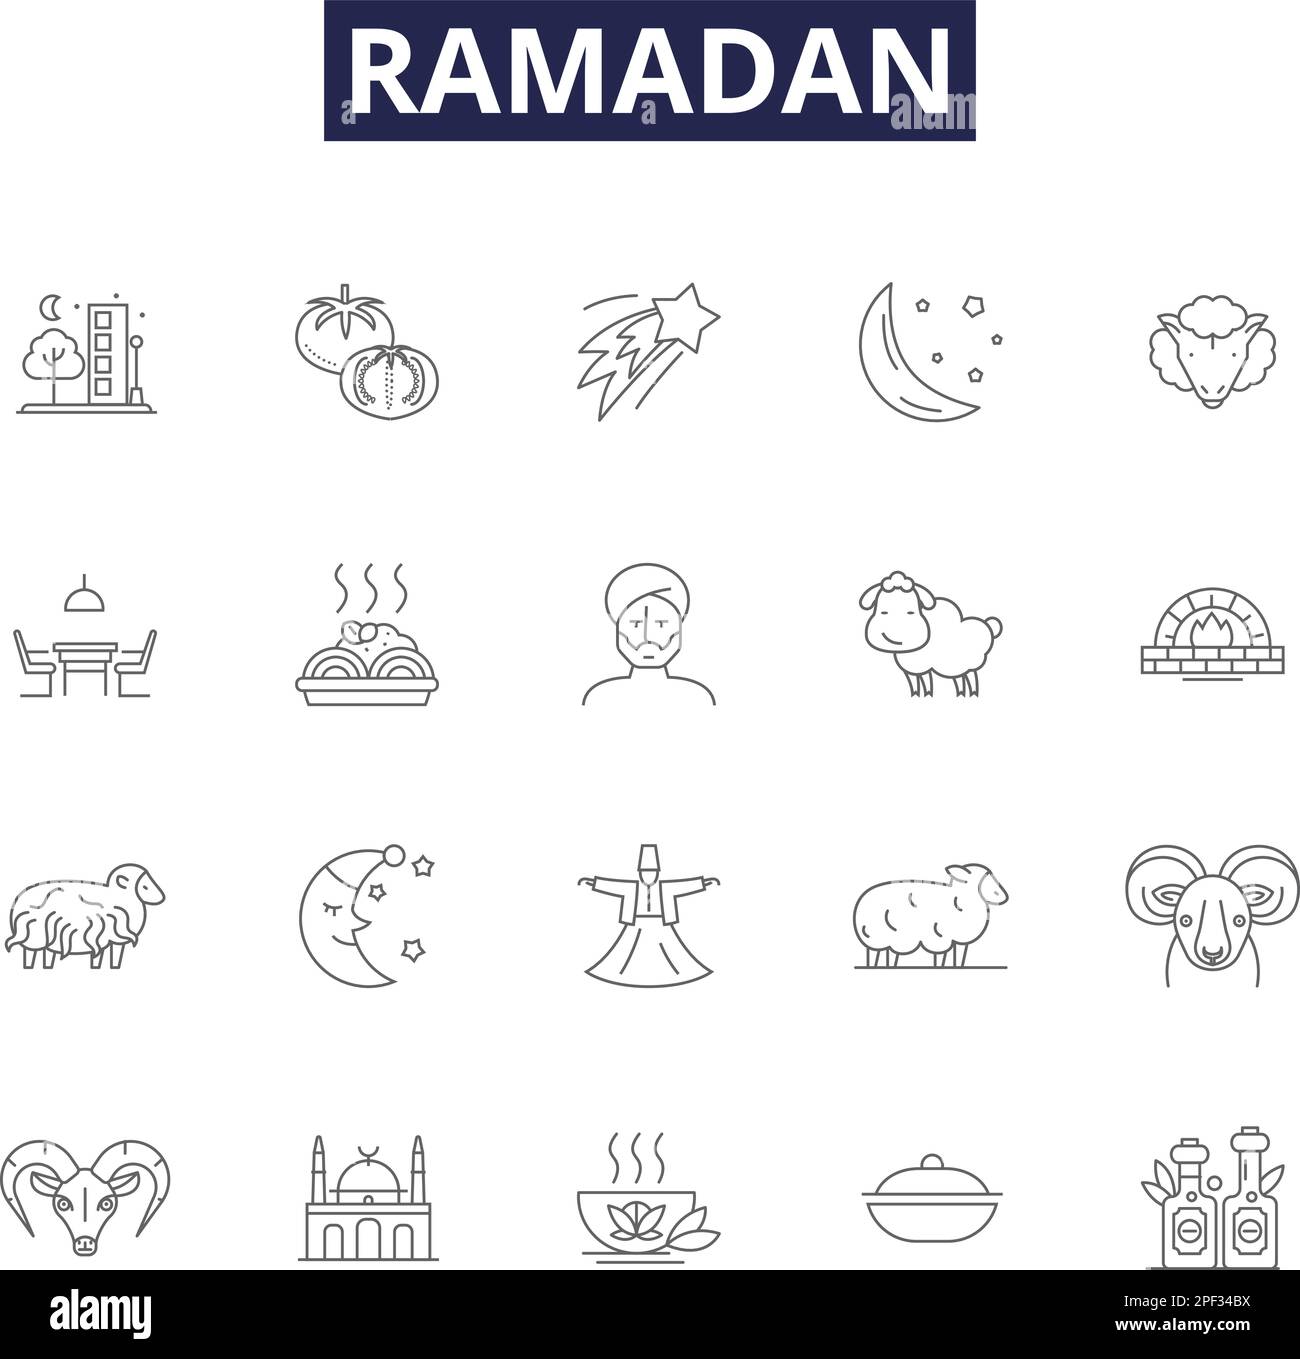 Ramadan-Linienvektorsymbole und -Zeichen. Schnell, Islam, Gebete, Monat, Koran, Fasten, Wohltätigkeit, spirituelle Konturen, Vektorbildungs-Set Stock Vektor